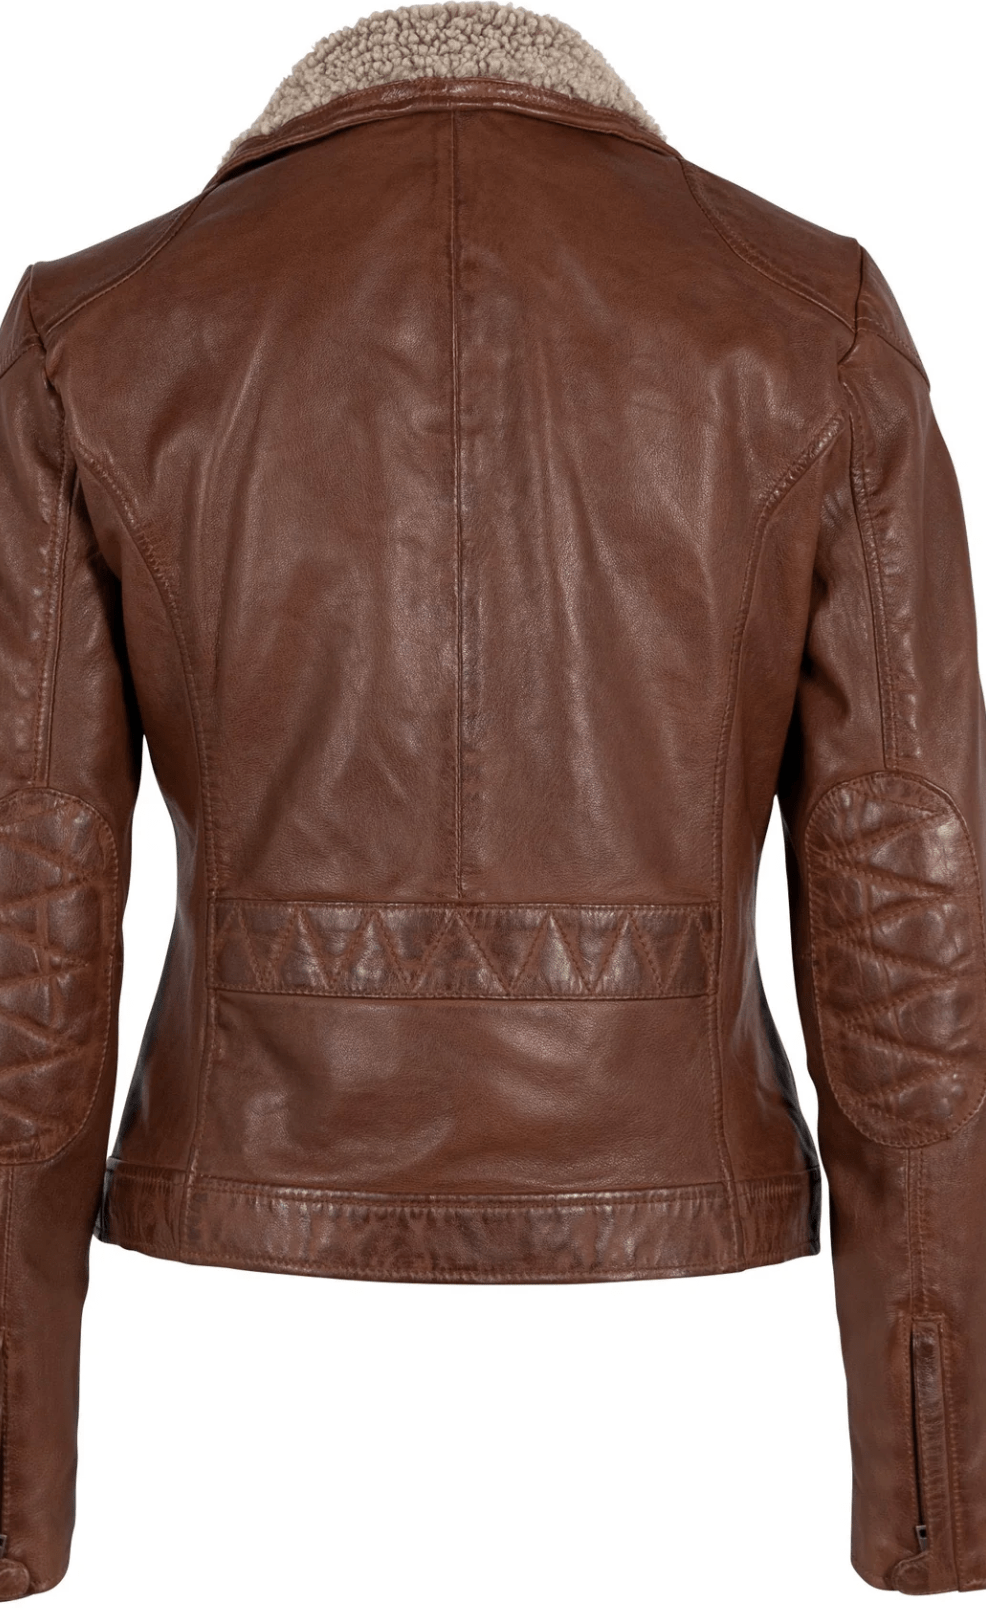 Jenja CF Leather Jacket by Mauritius